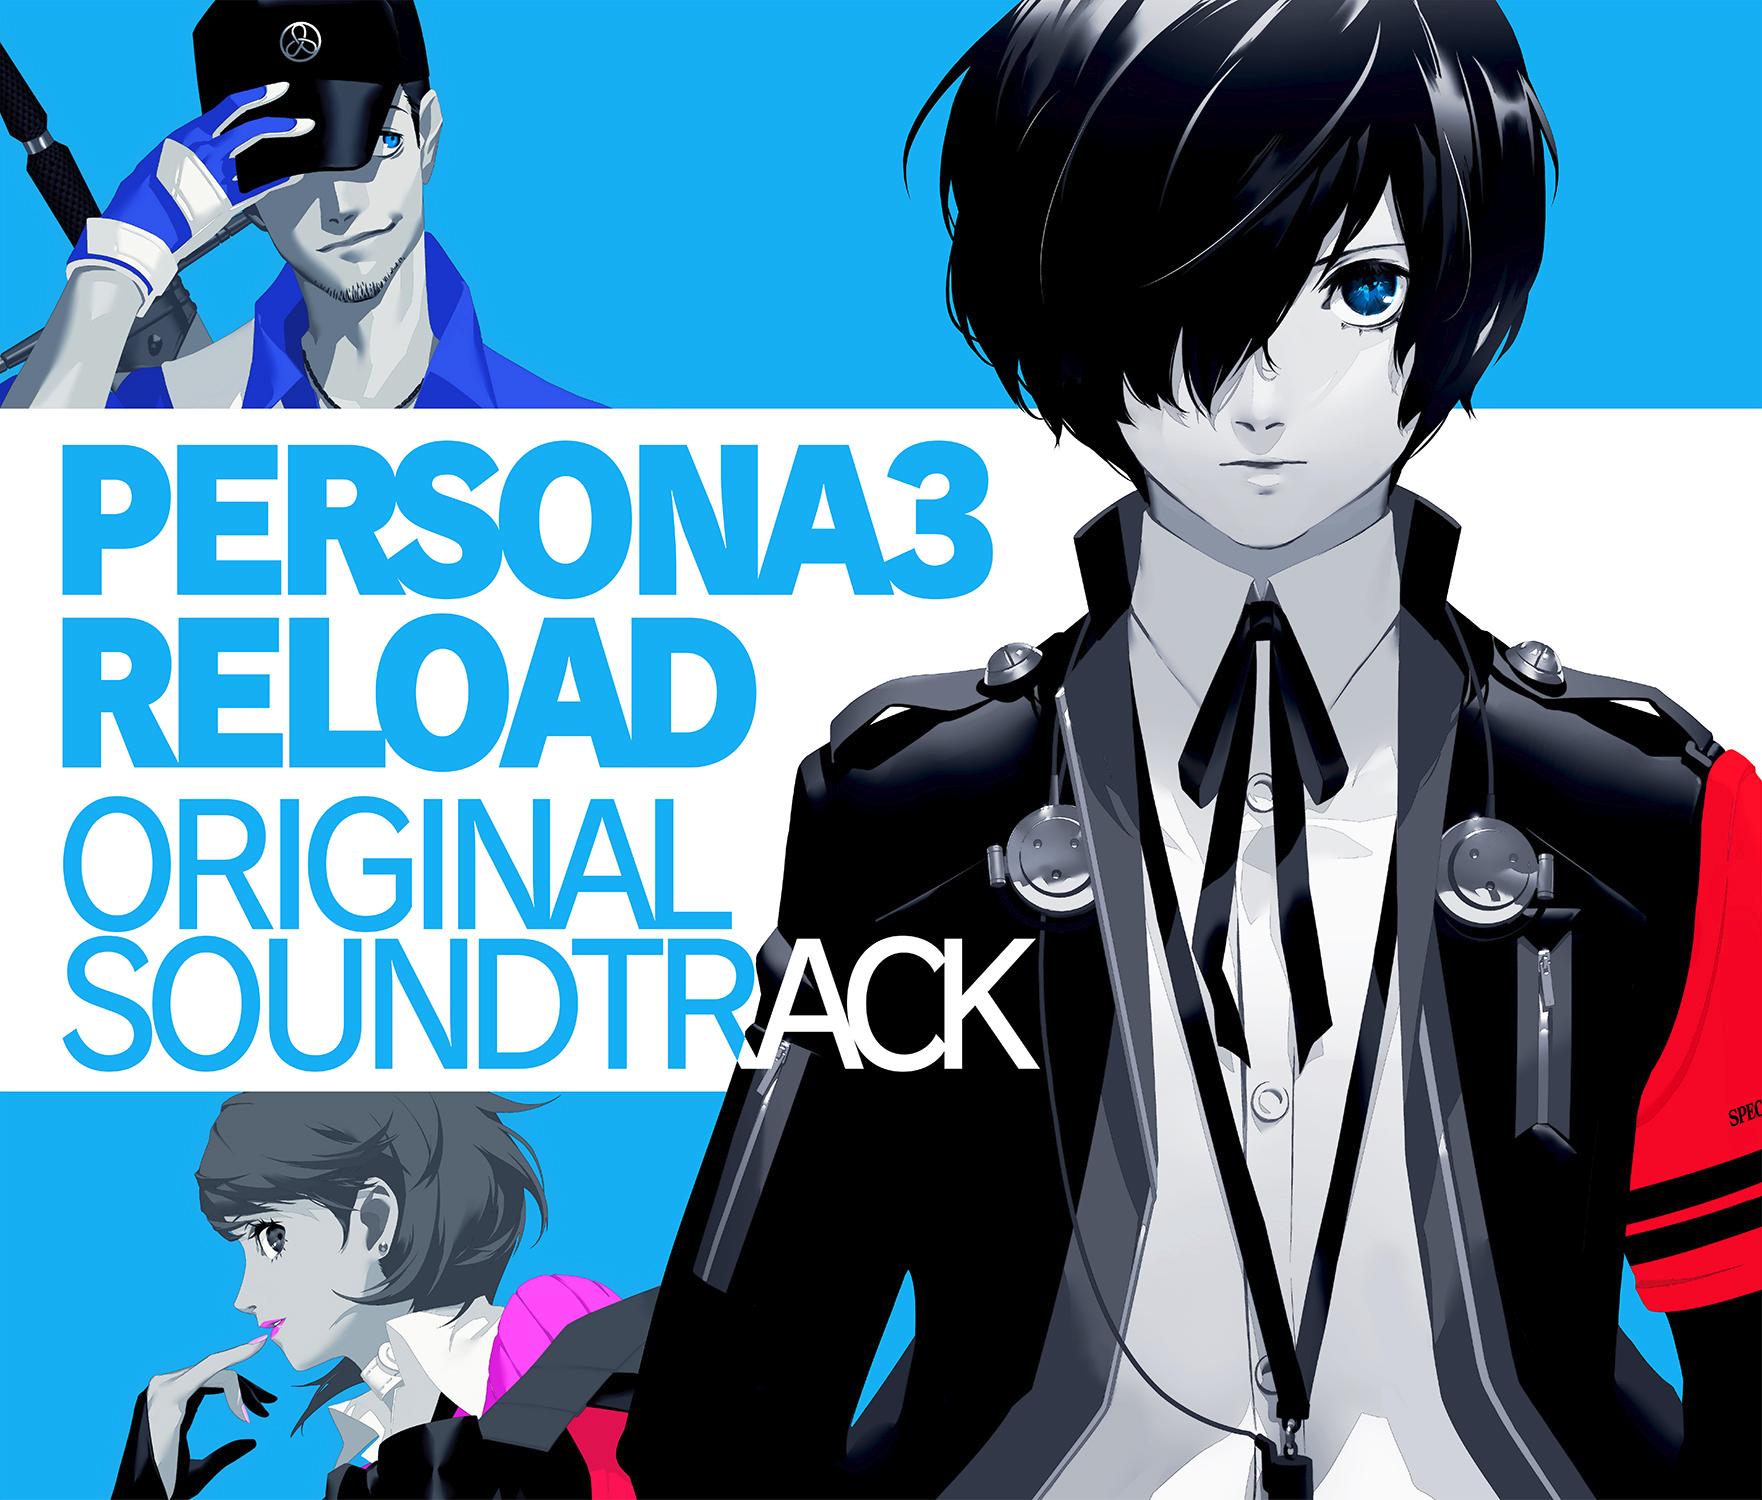 Persona 3 Reload Original Soundtrack | Megami Tensei Wiki